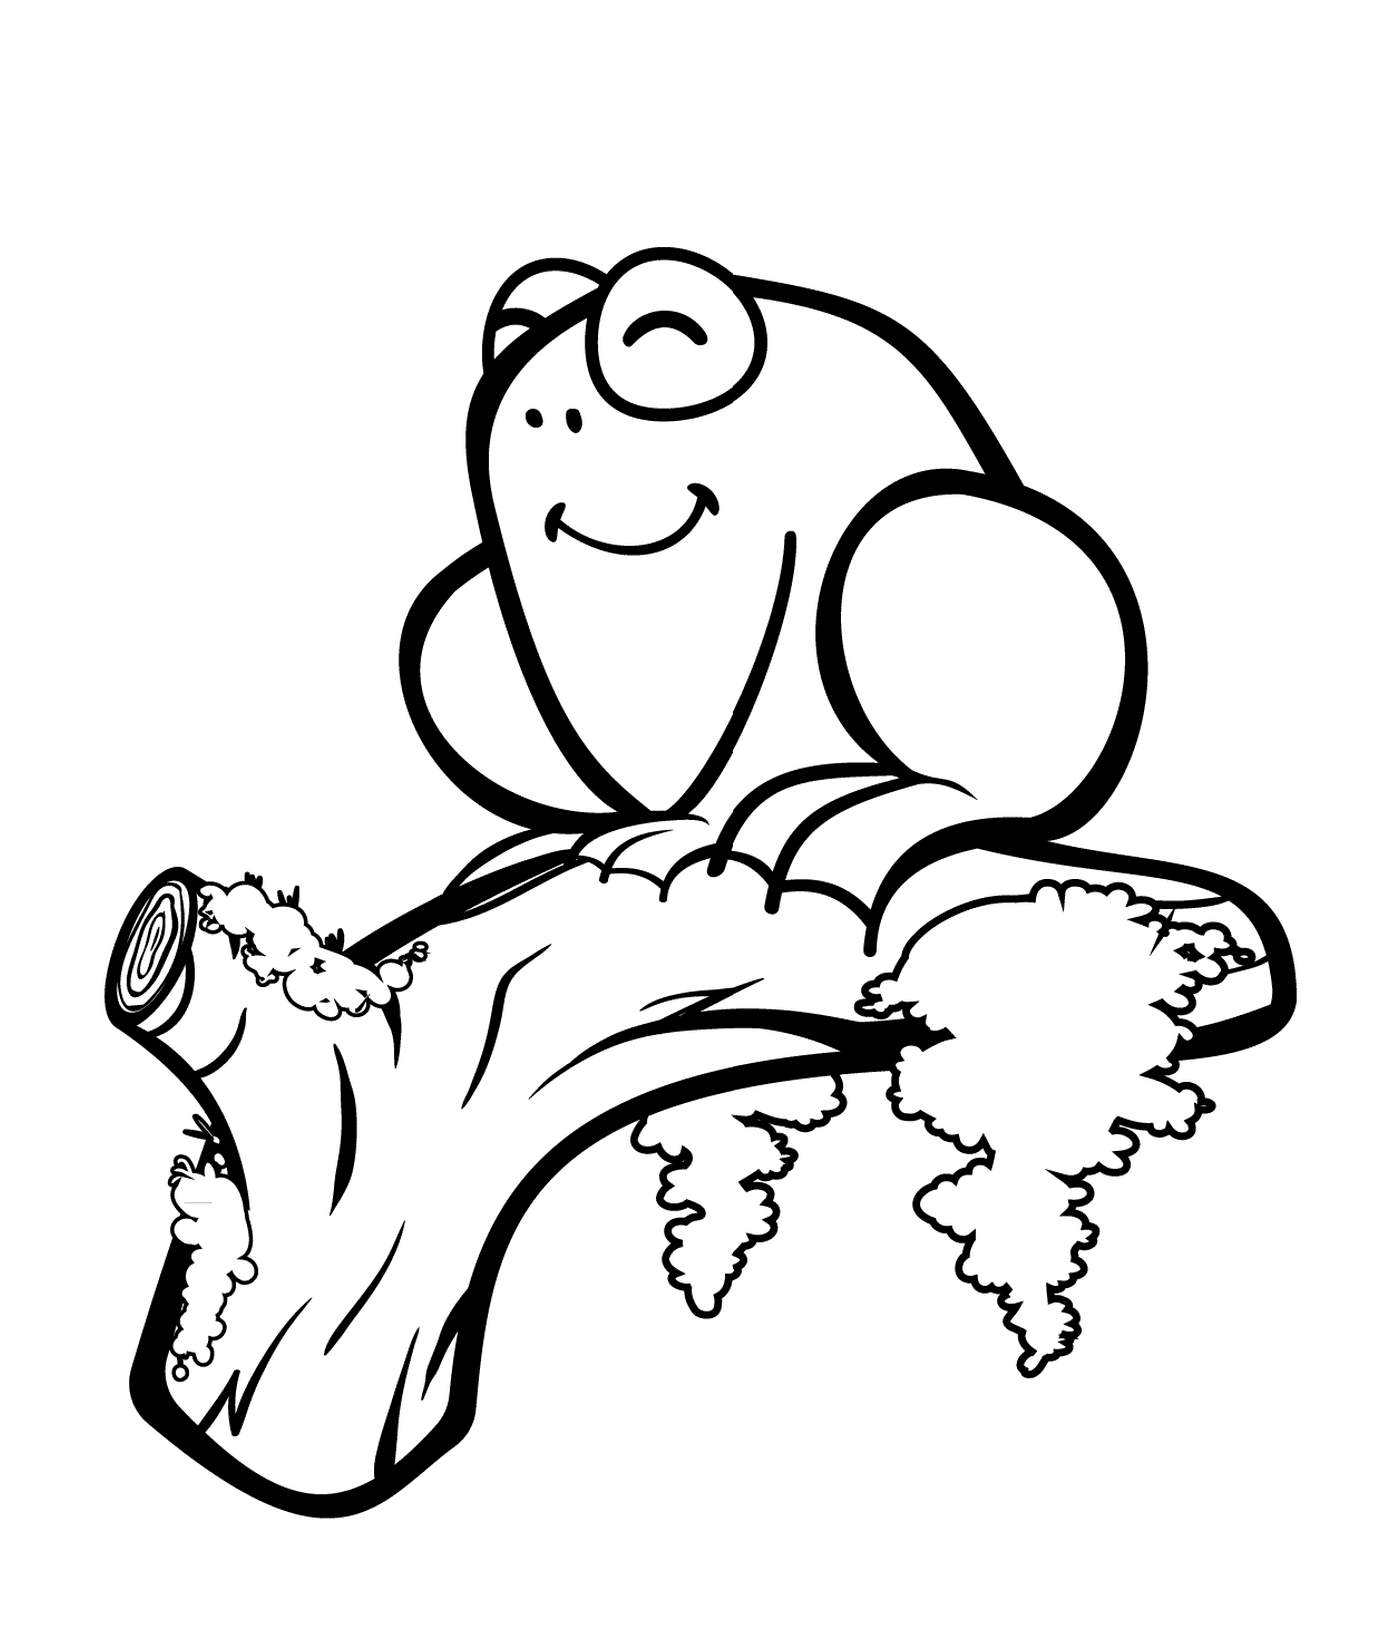  Ein Frosch sitzt auf einem Ast 